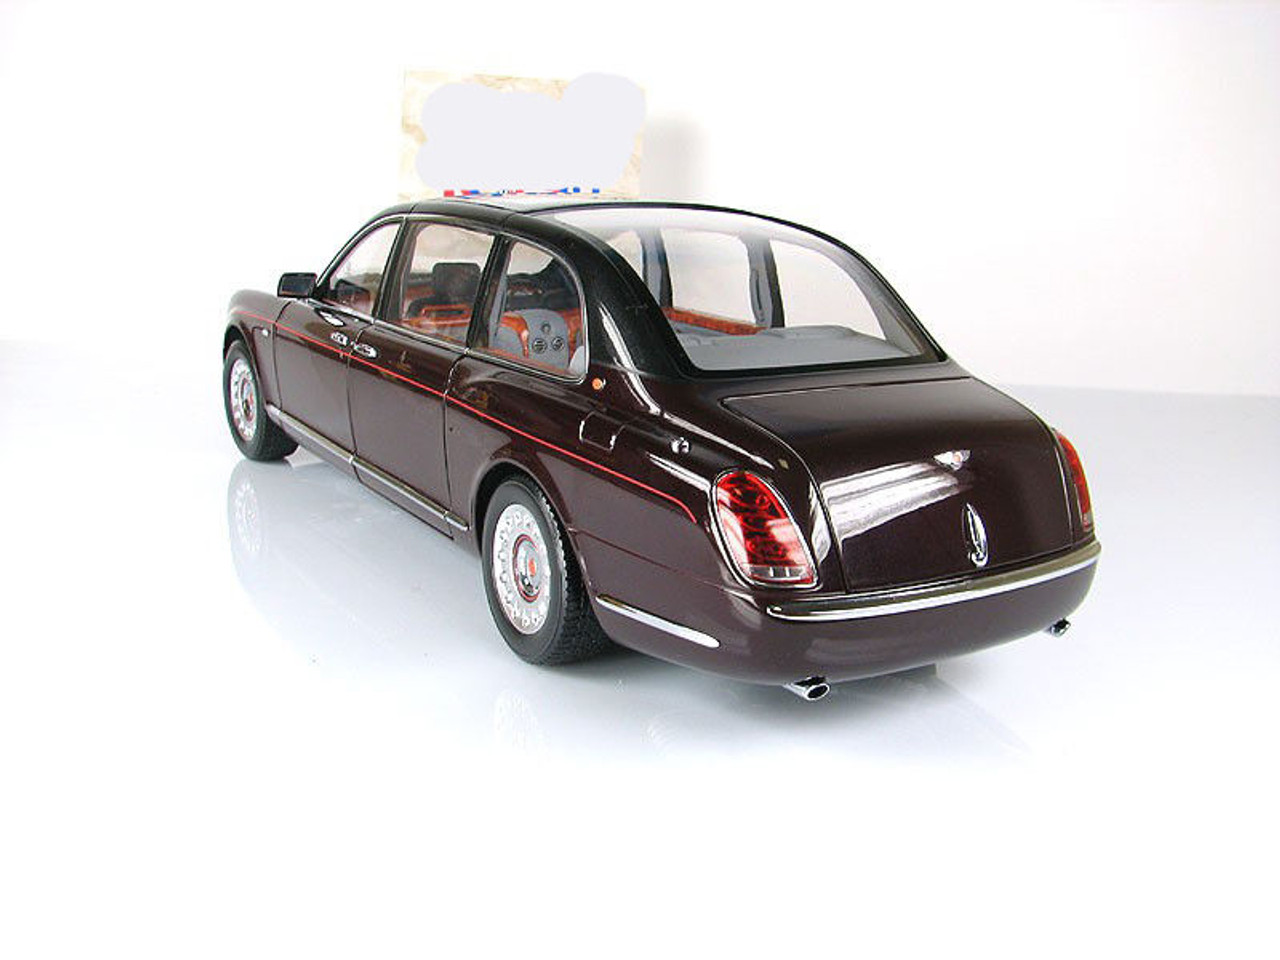 1/18 Minichamps 2002 Queen Bentley State Limousine Diecast Car Model